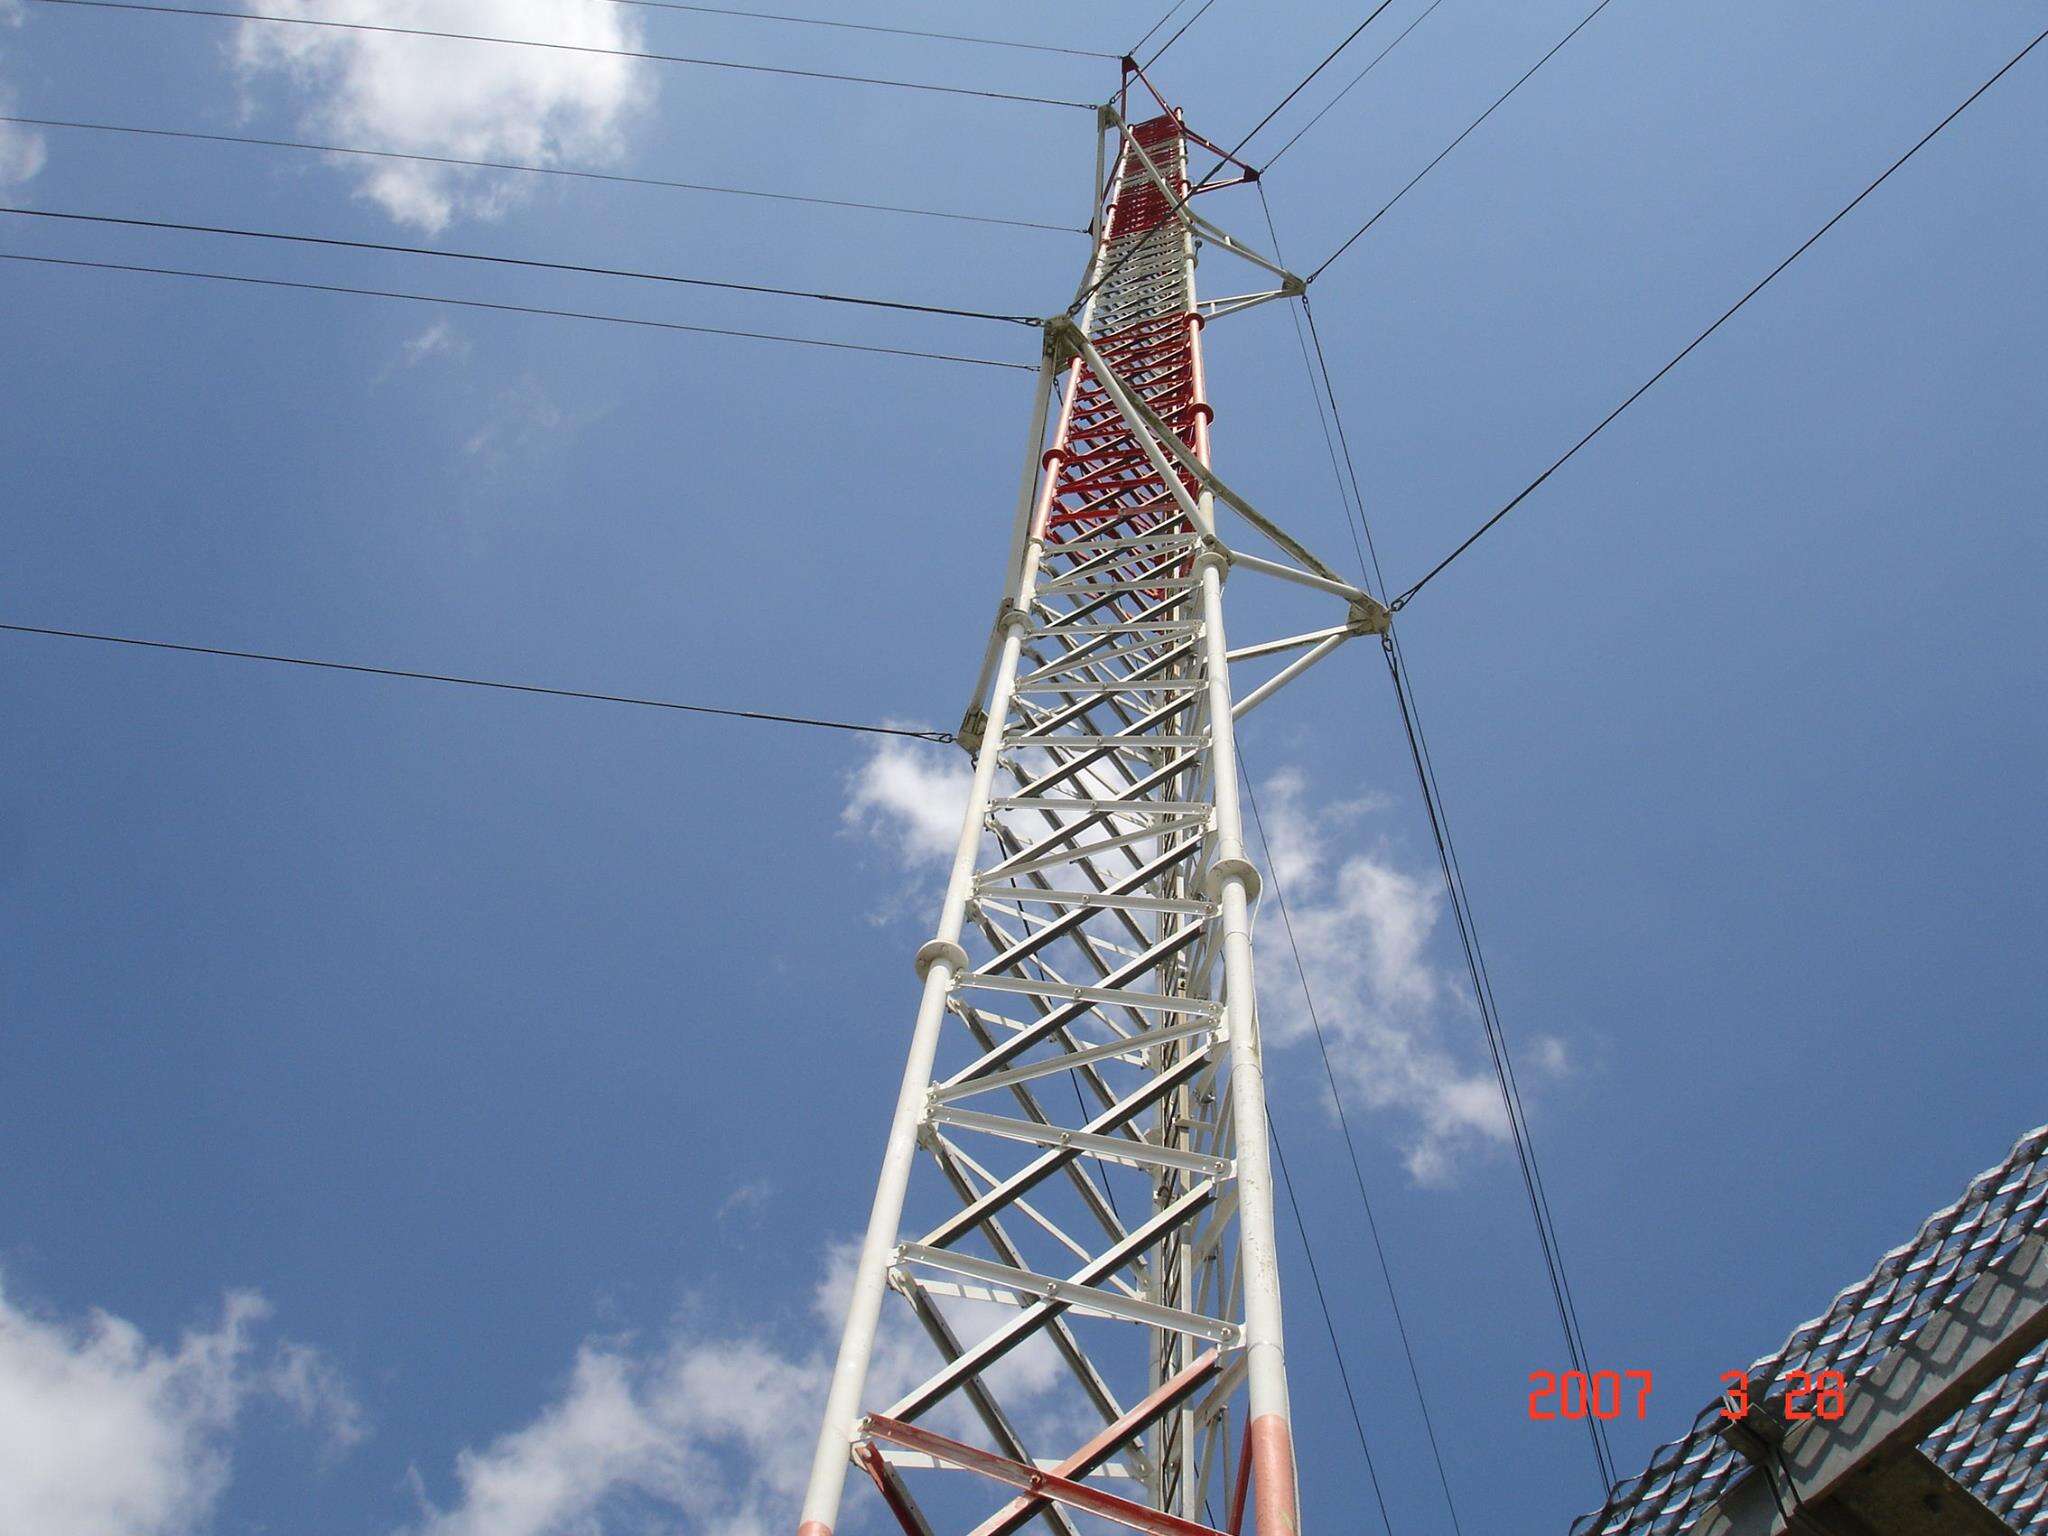 Fornitore di telecomunicazioni mobili con torre di trasmissione